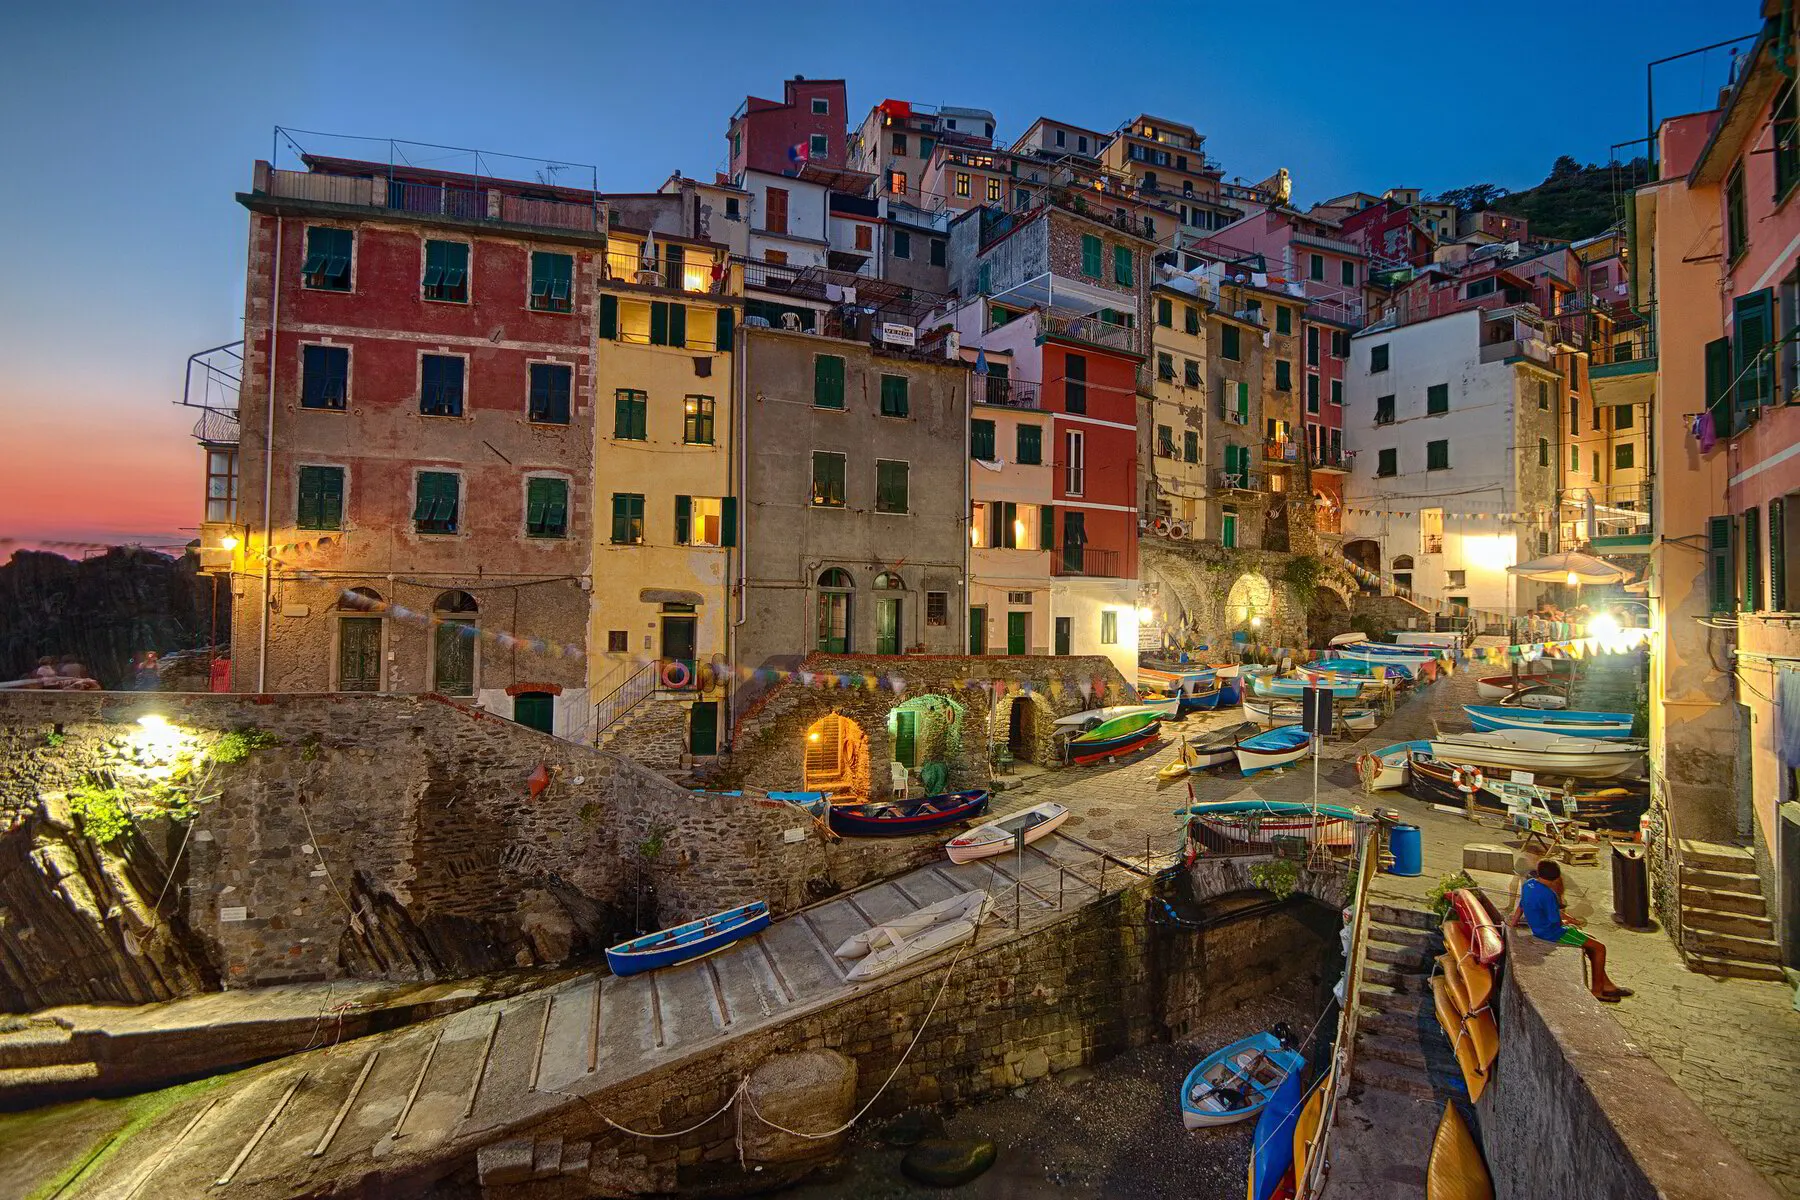 Podróż do Cinque Terre: przepiękne miasteczka Riomaggiore, Manarola i Vernazza